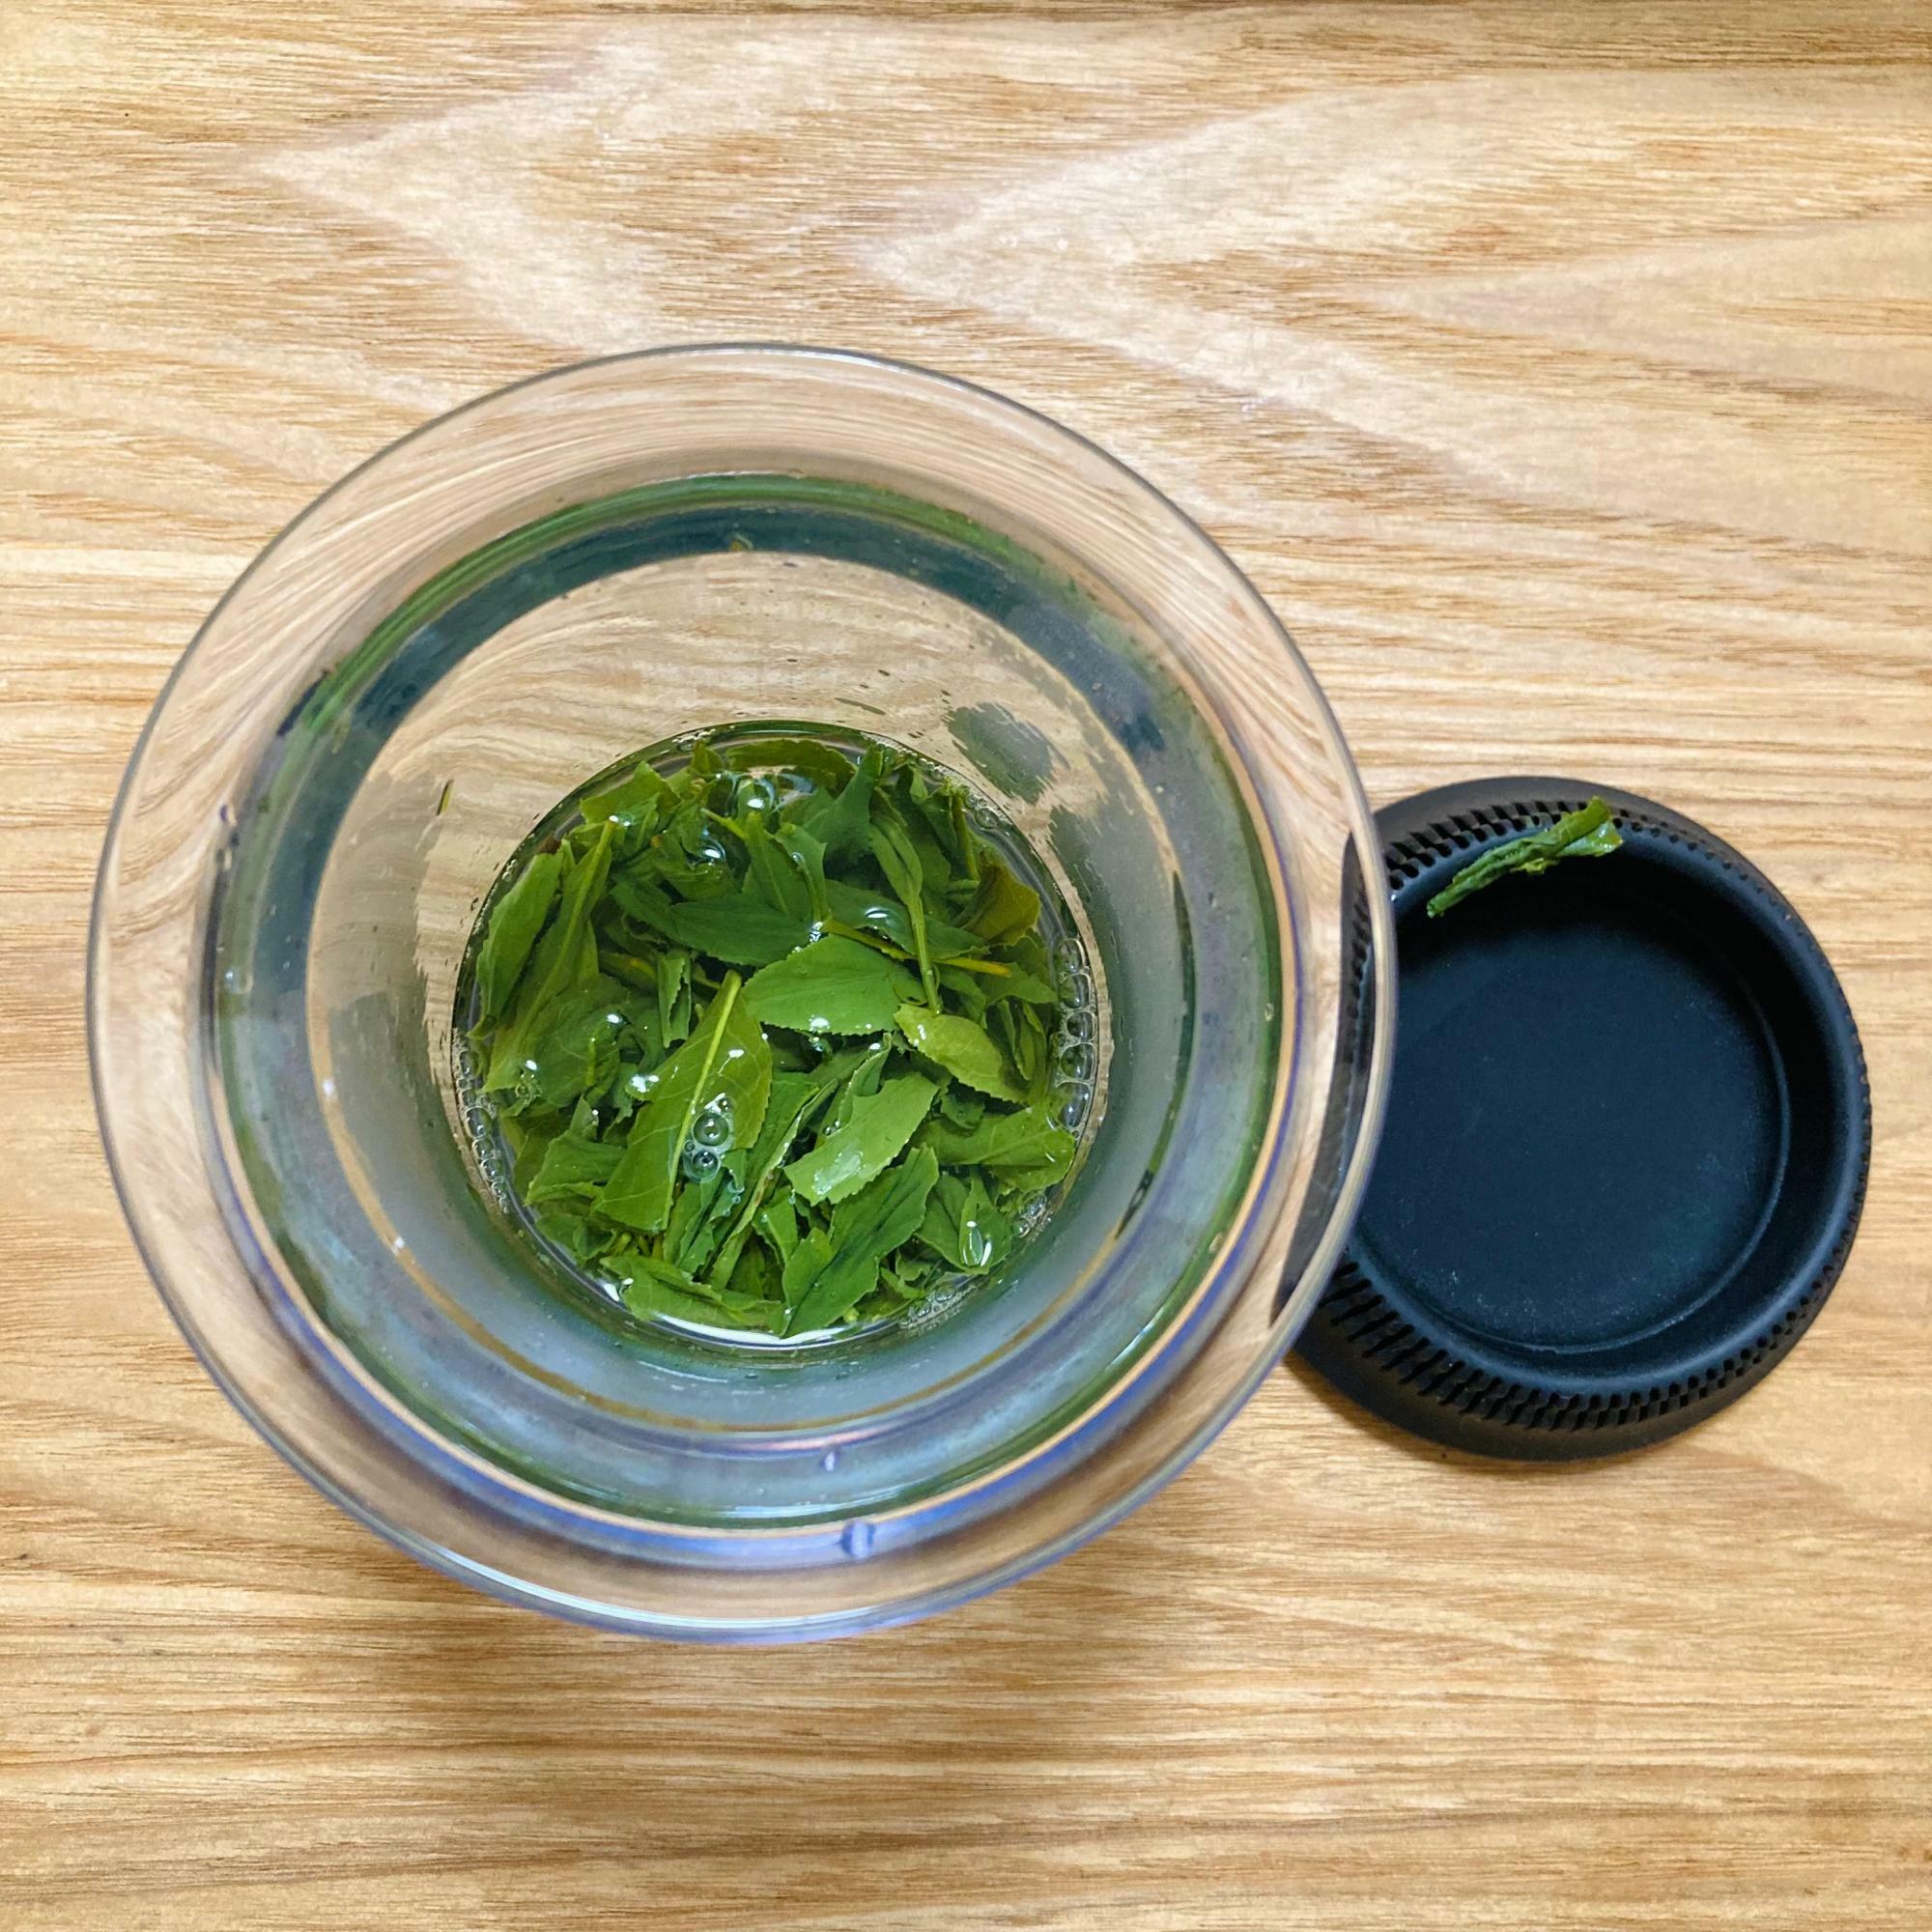 研修後にいただいた揉みたての茶葉を早速自宅で淹れてみました！ナナズグリーンティーオリジナルの進化系急須「360KYUSU」を使っています。三煎目くらいになると茶葉が綺麗に広がり見た目も美しいです。